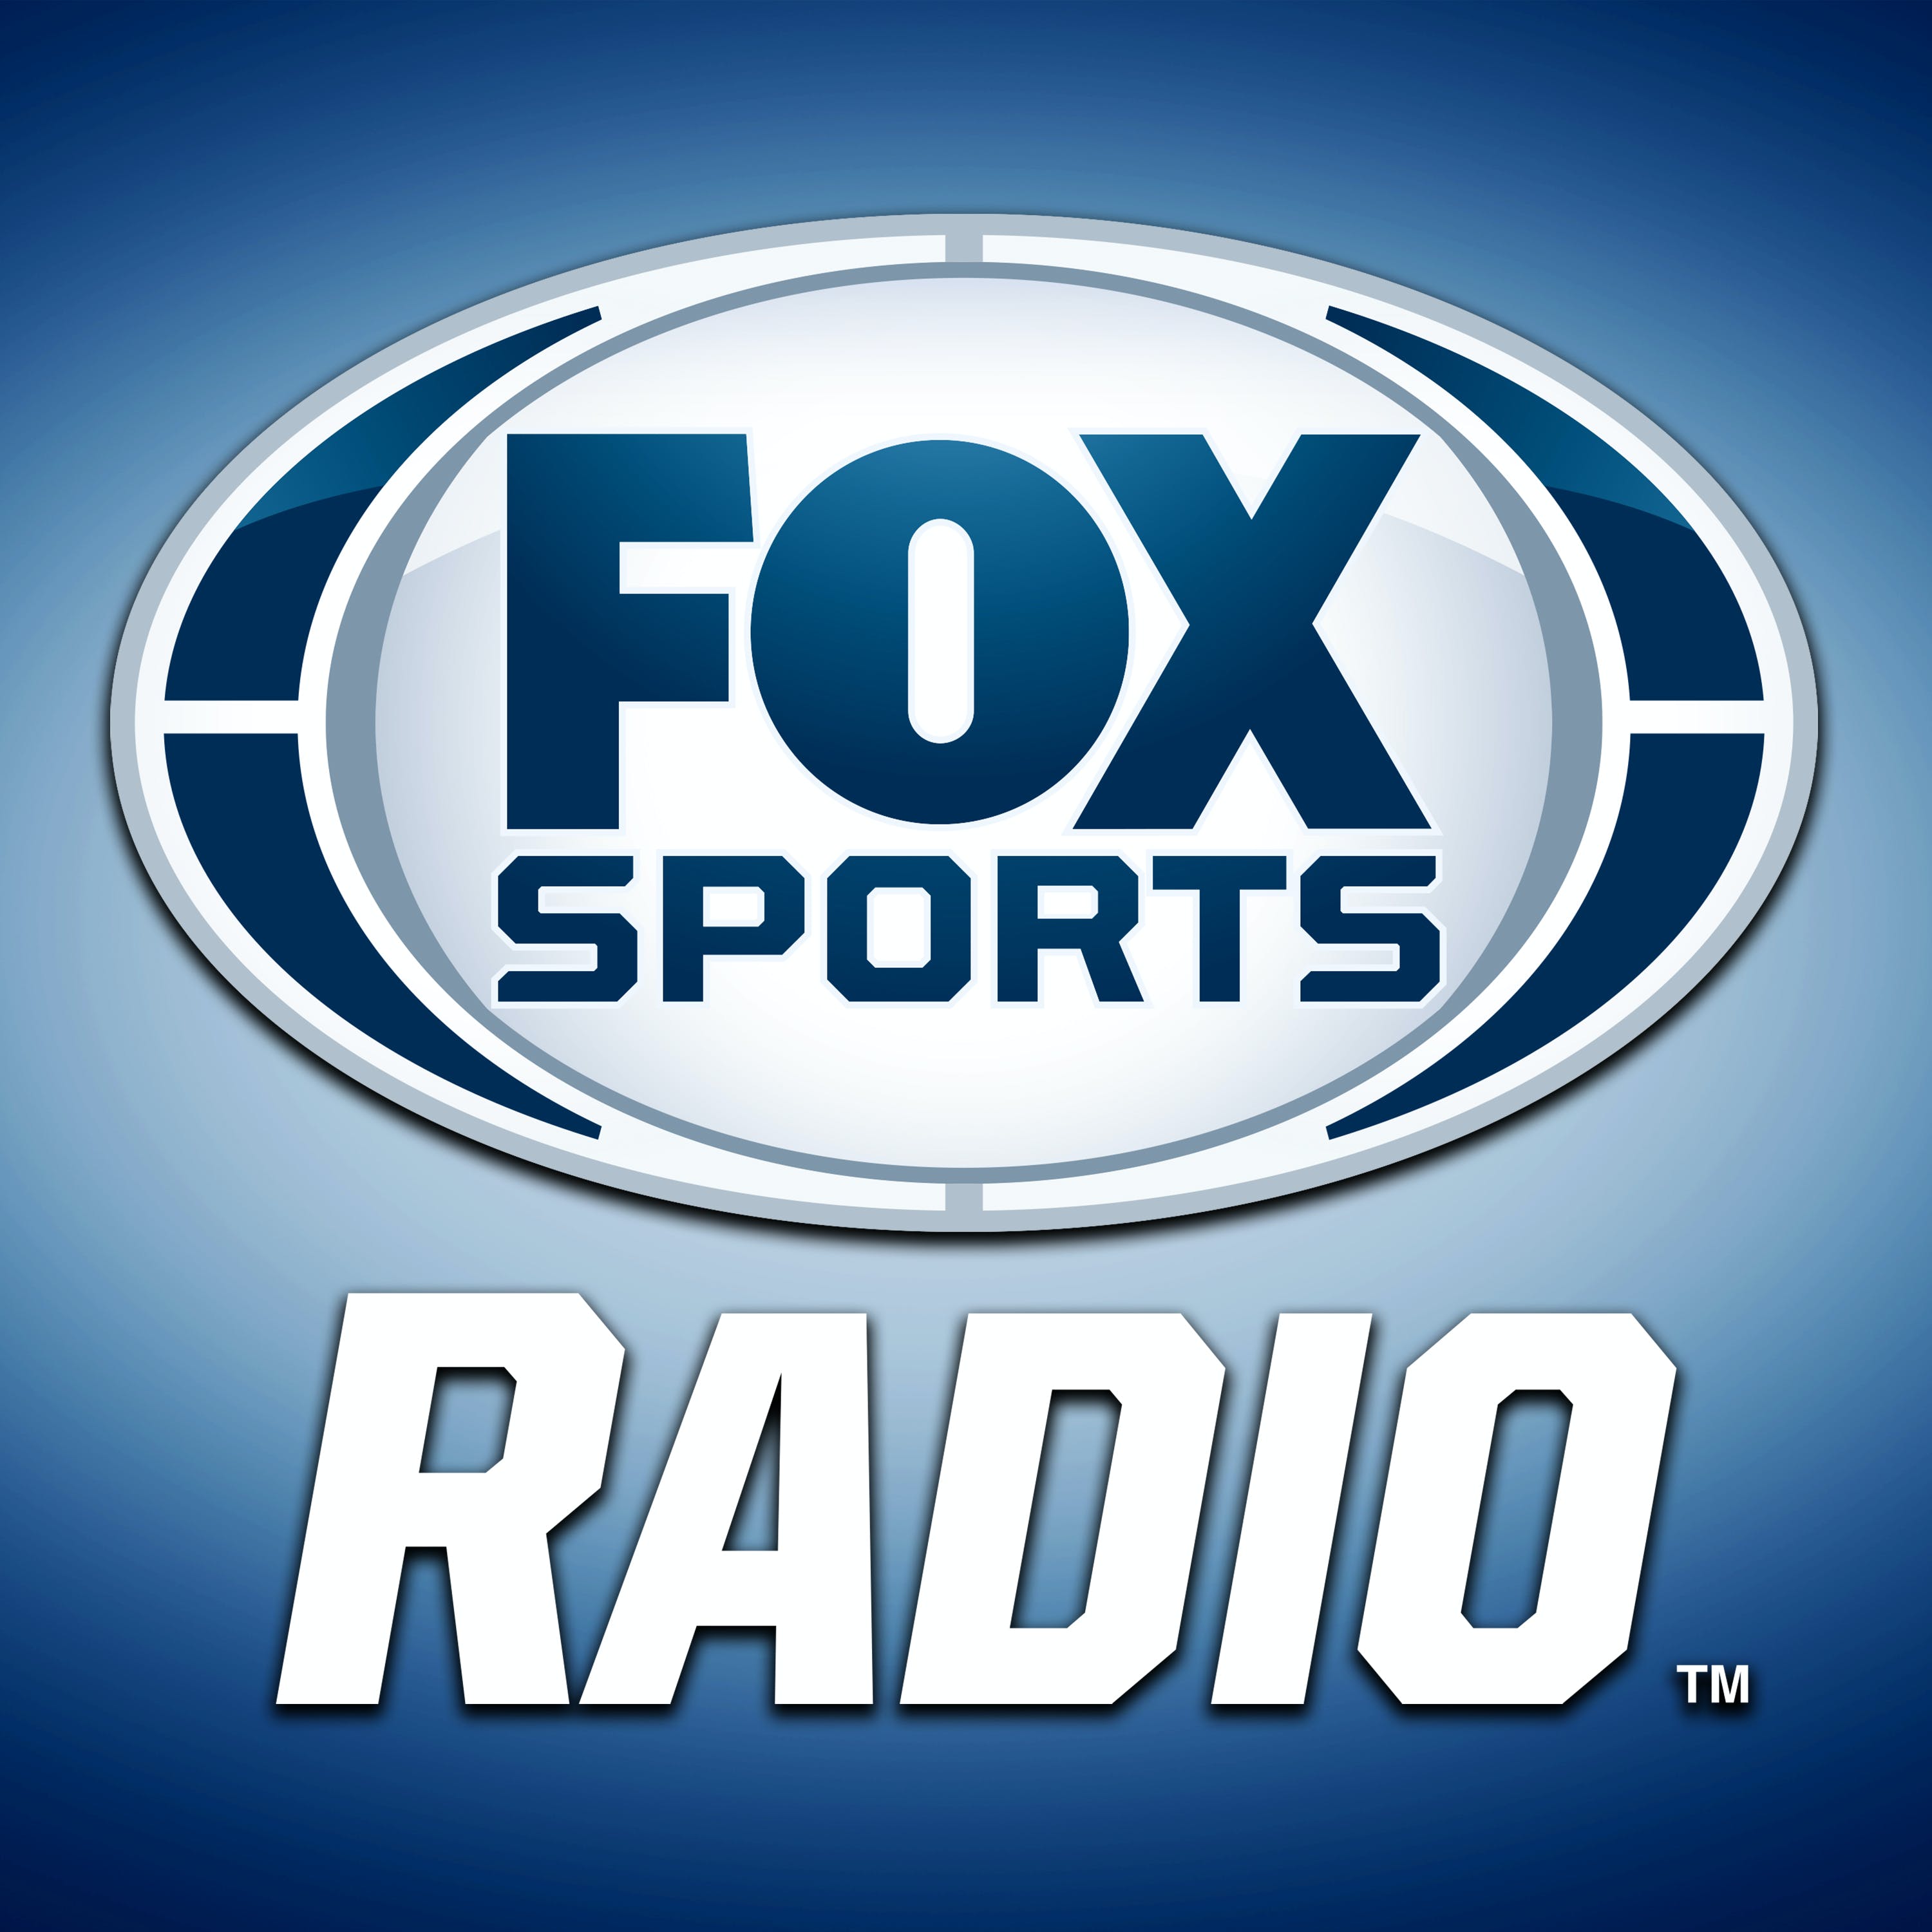 03/27/2021 - FOX Sports Saturday with Steve Hartman and Geoff Schwartz